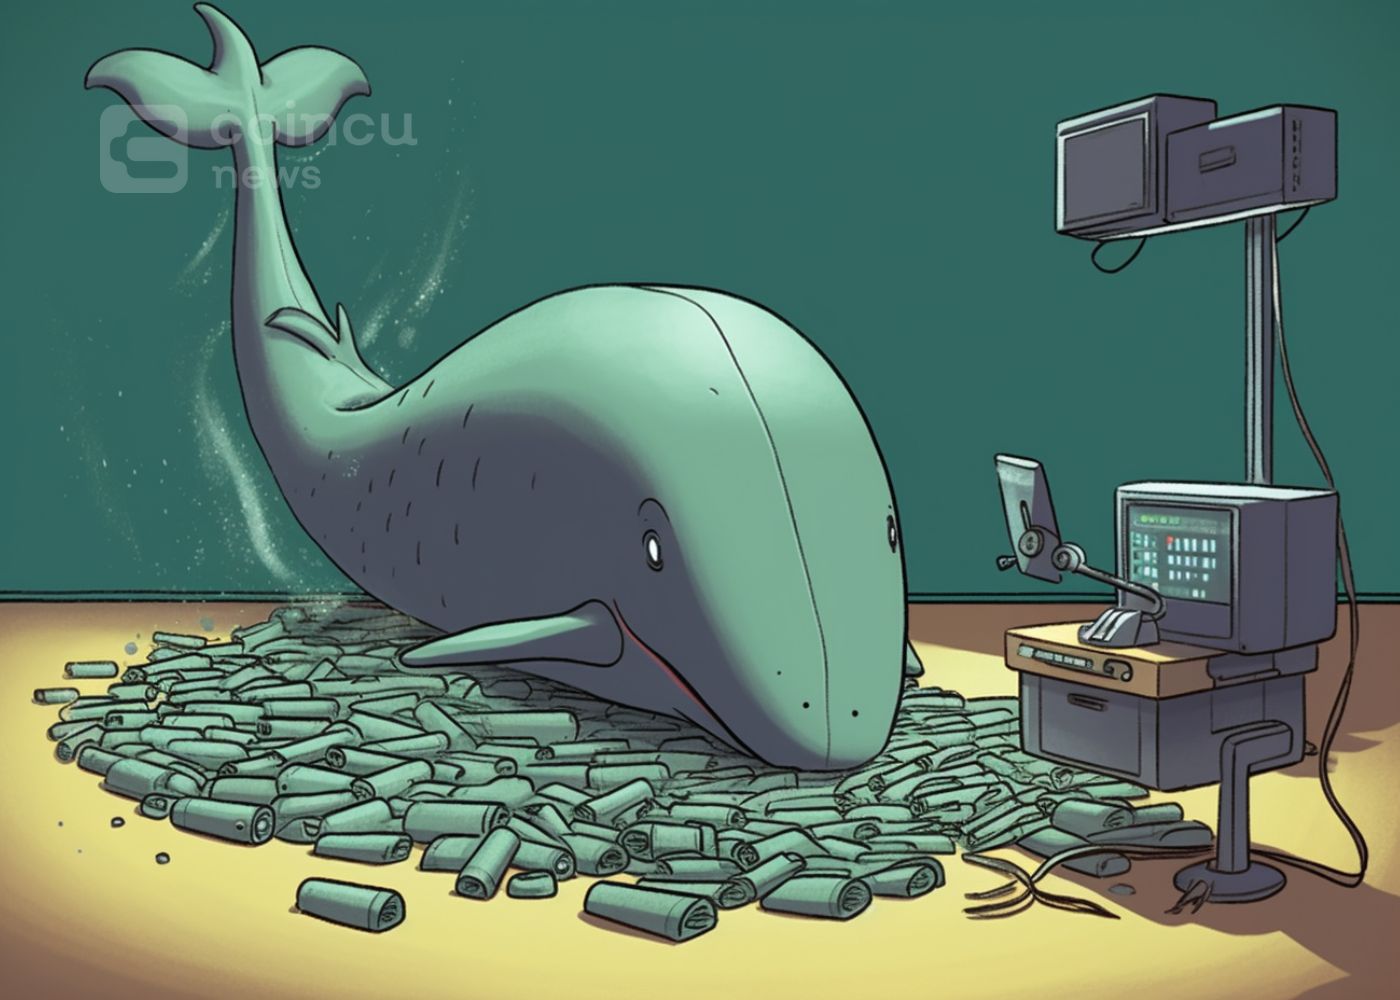 Smart Whale ETH avec un taux de victoire de 100 % retire 40 millions de dollars en 15 jours